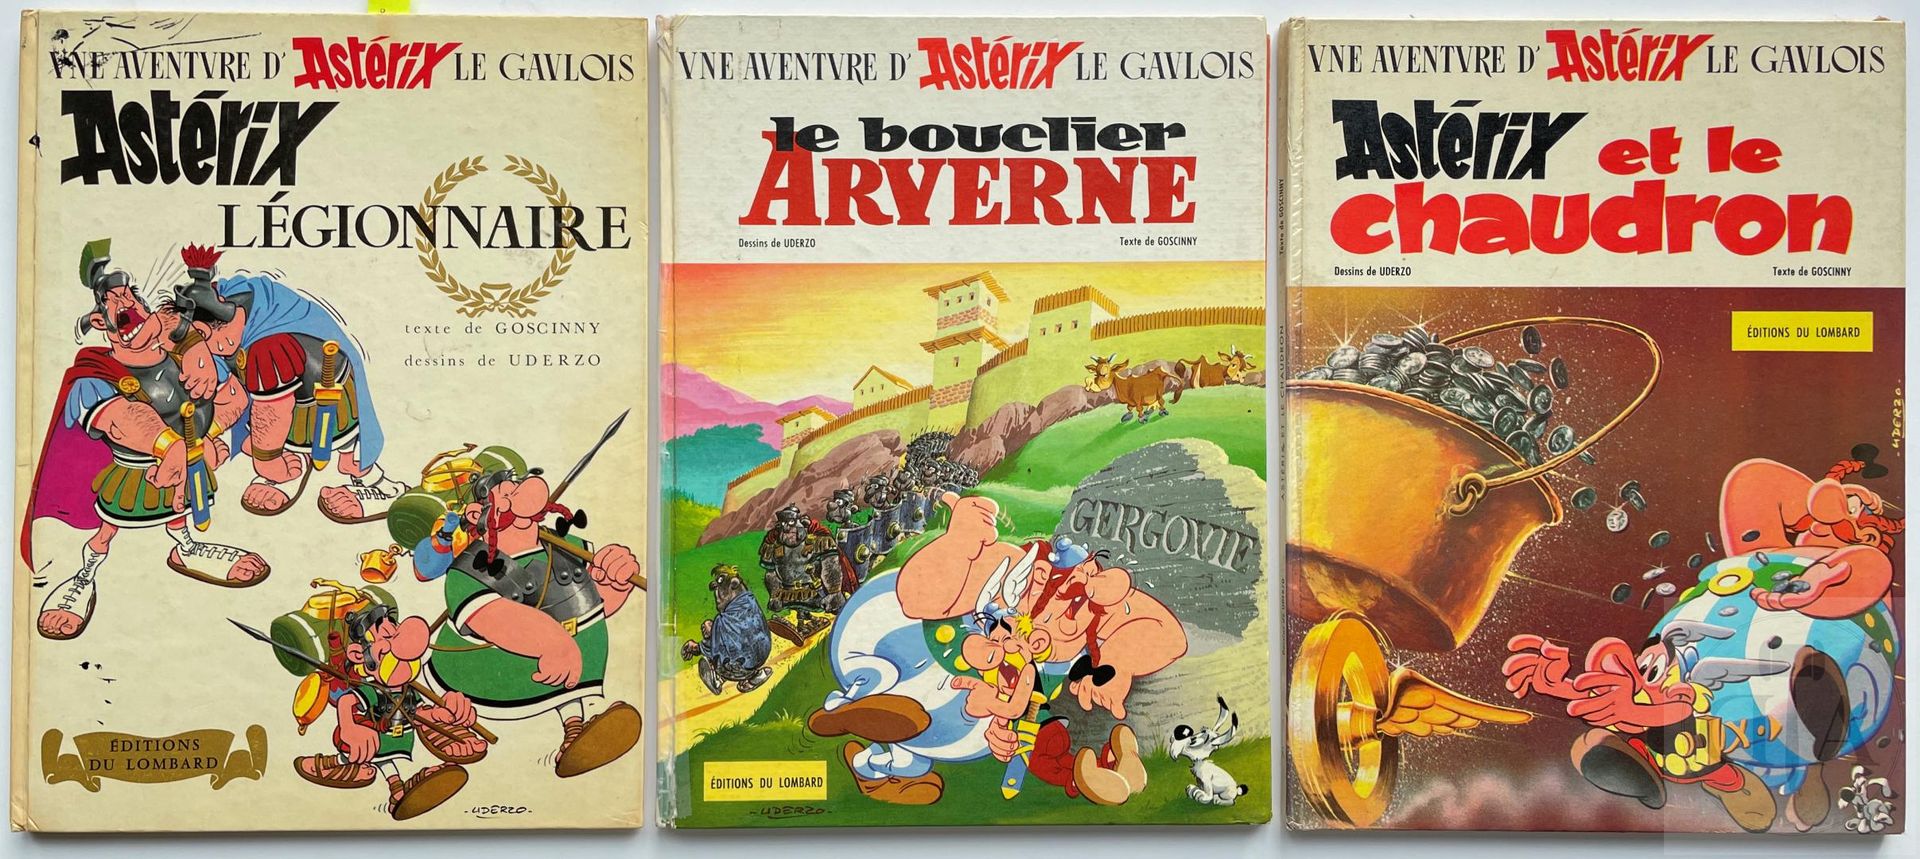 Null Uderzo/Asterix y Obelix. Trío de álbumes de EO: 

- T10 "Asterix legionario&hellip;